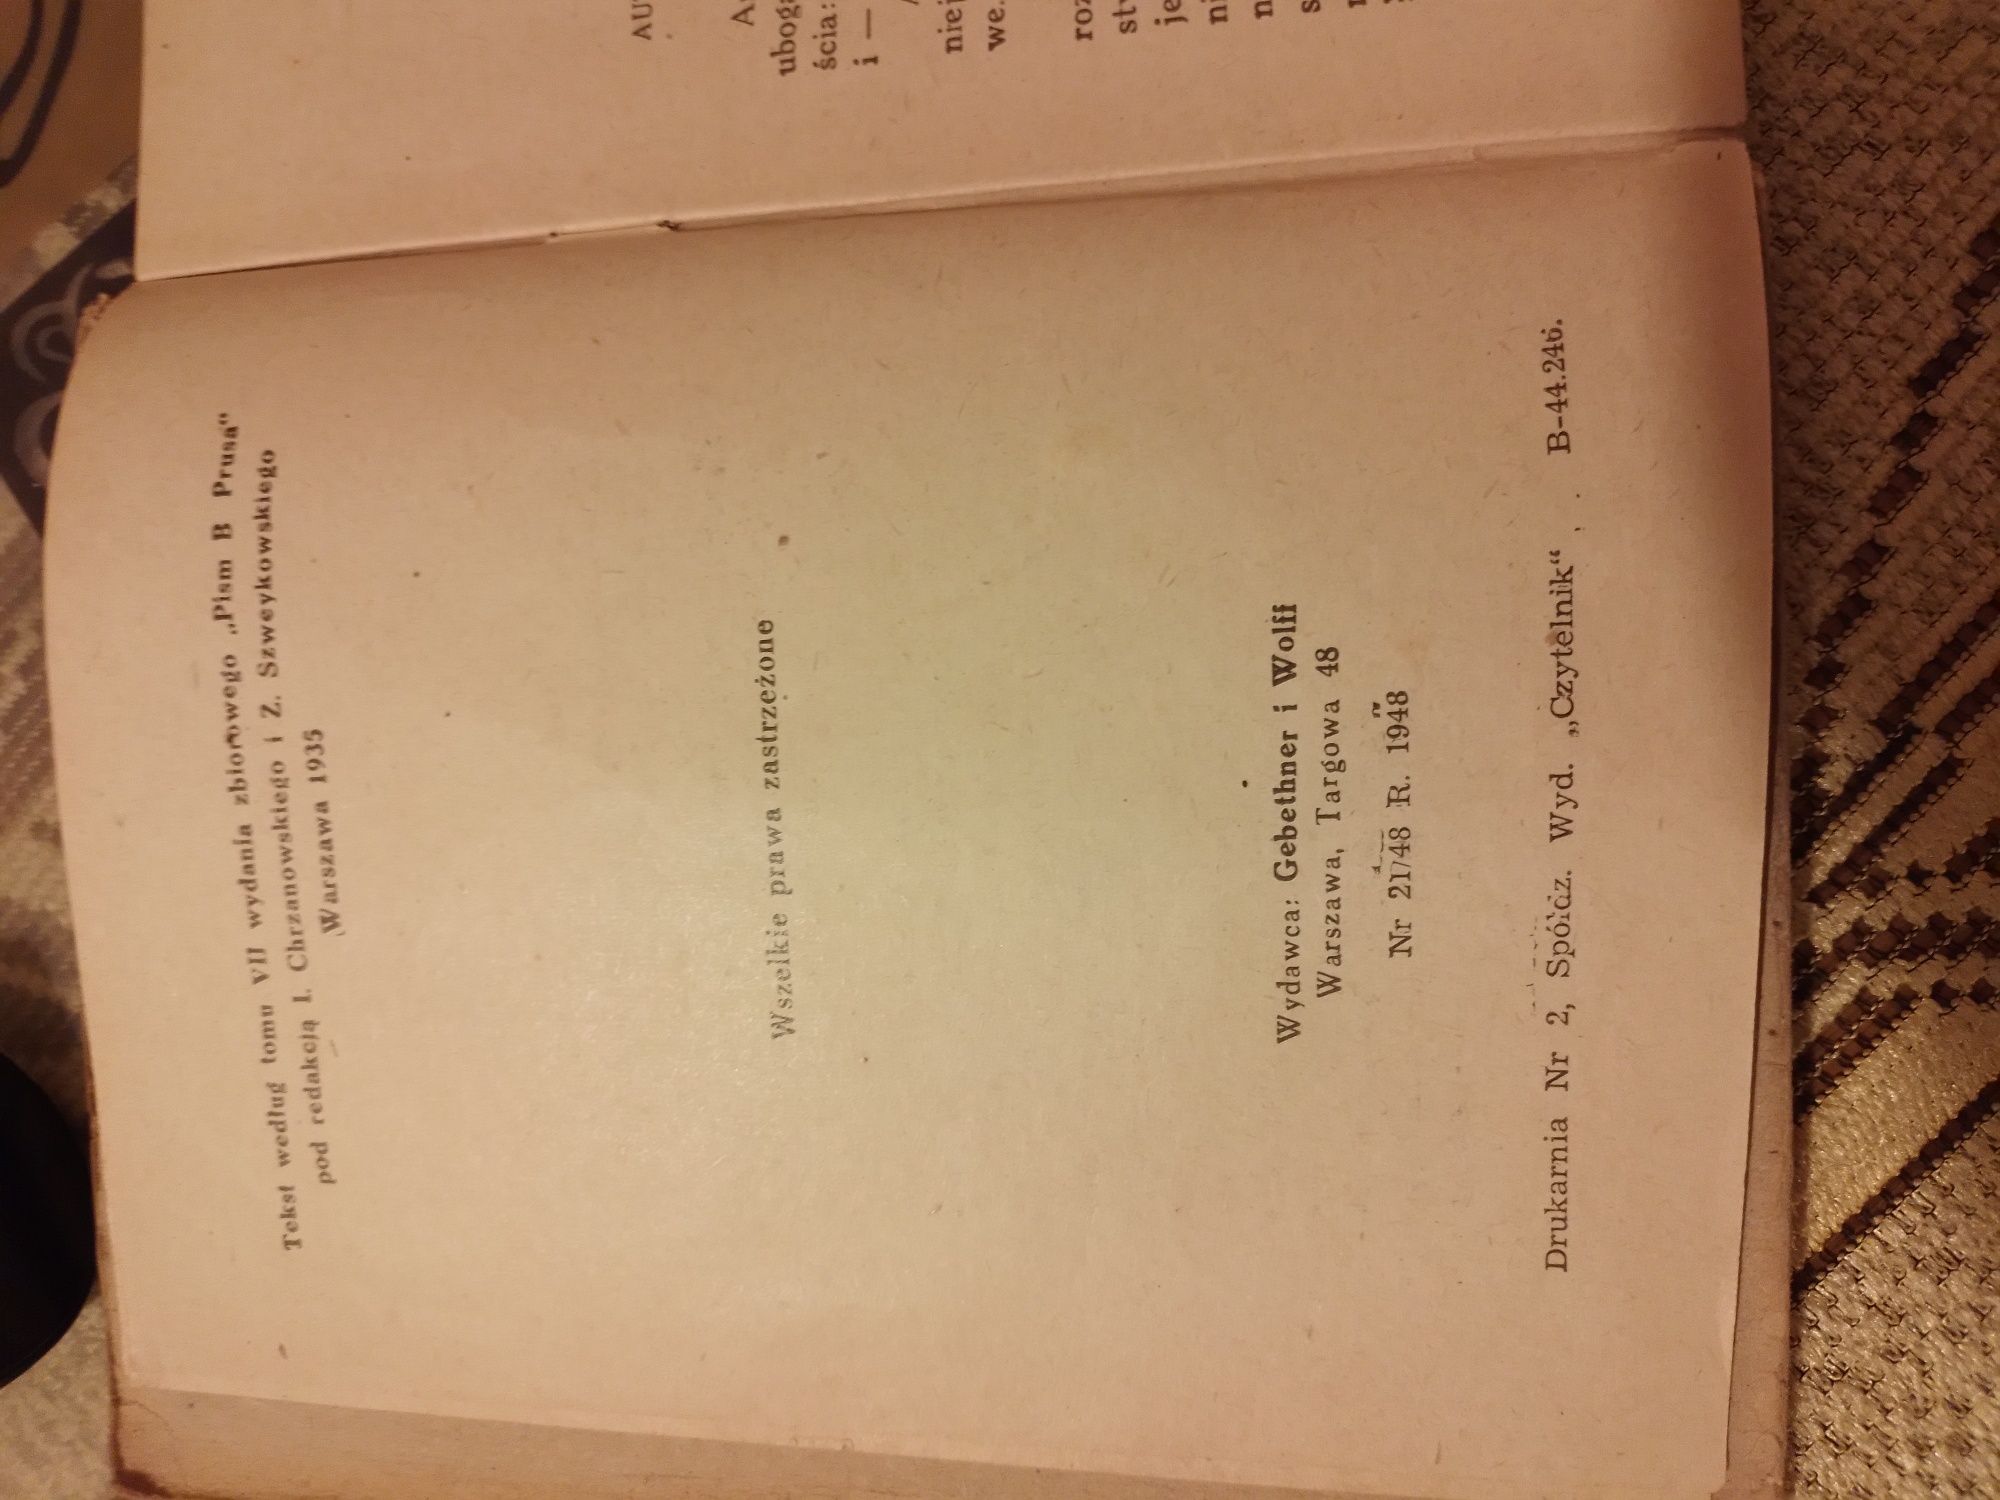 Kolekcjonerska książka 1948r. Anielka B.Prus